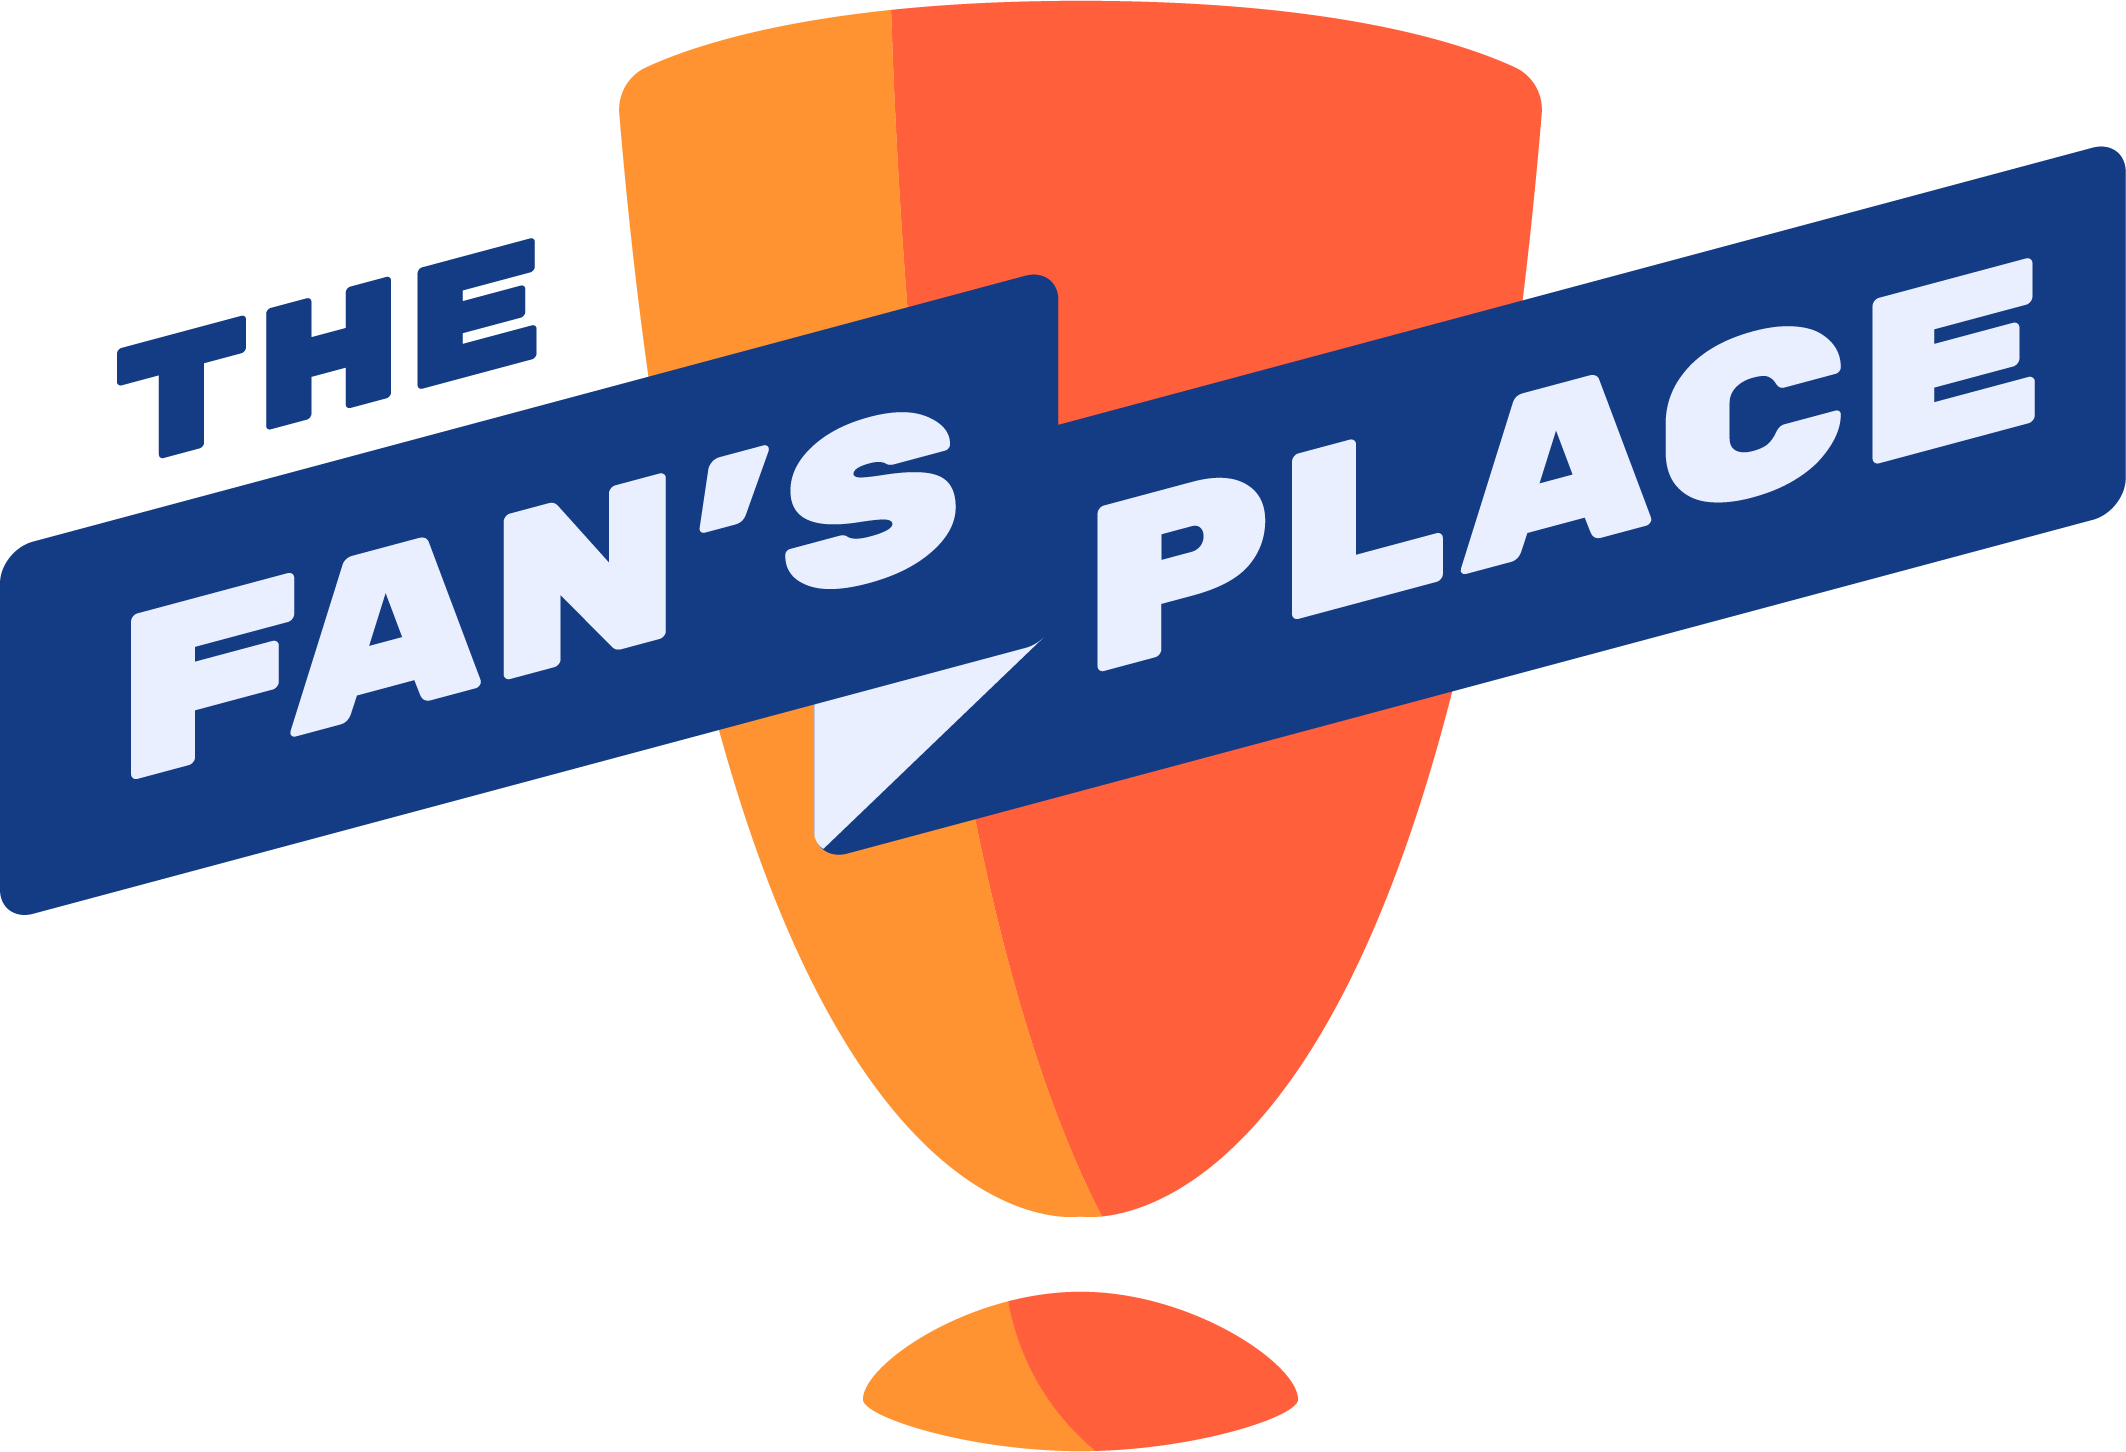 The Fan's Place logo.